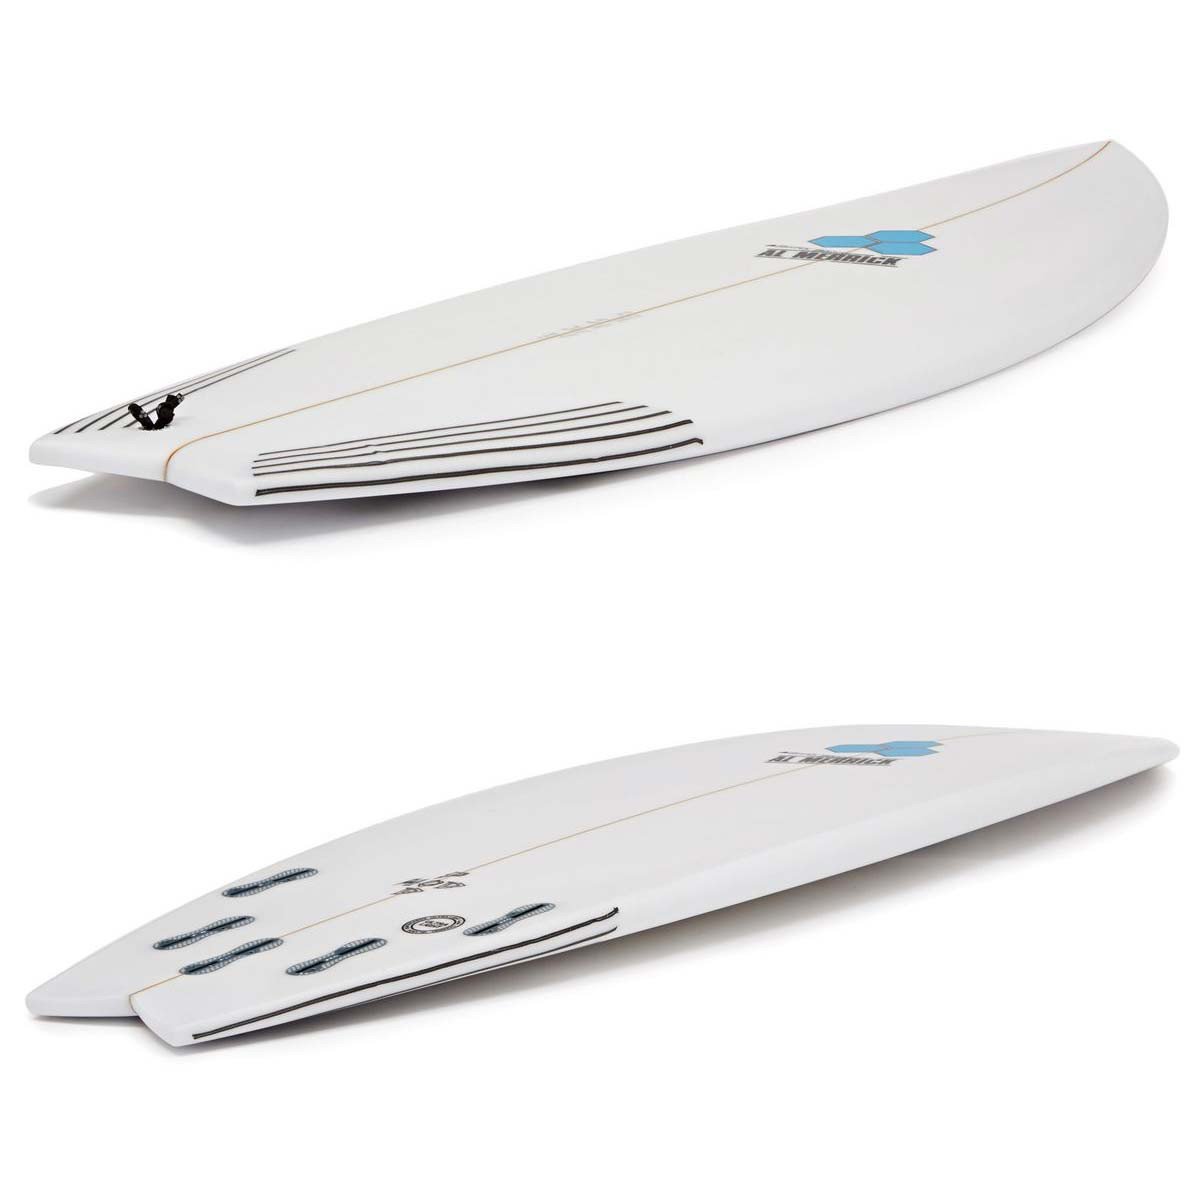 Pod Mod – Channel Islands Surfboards